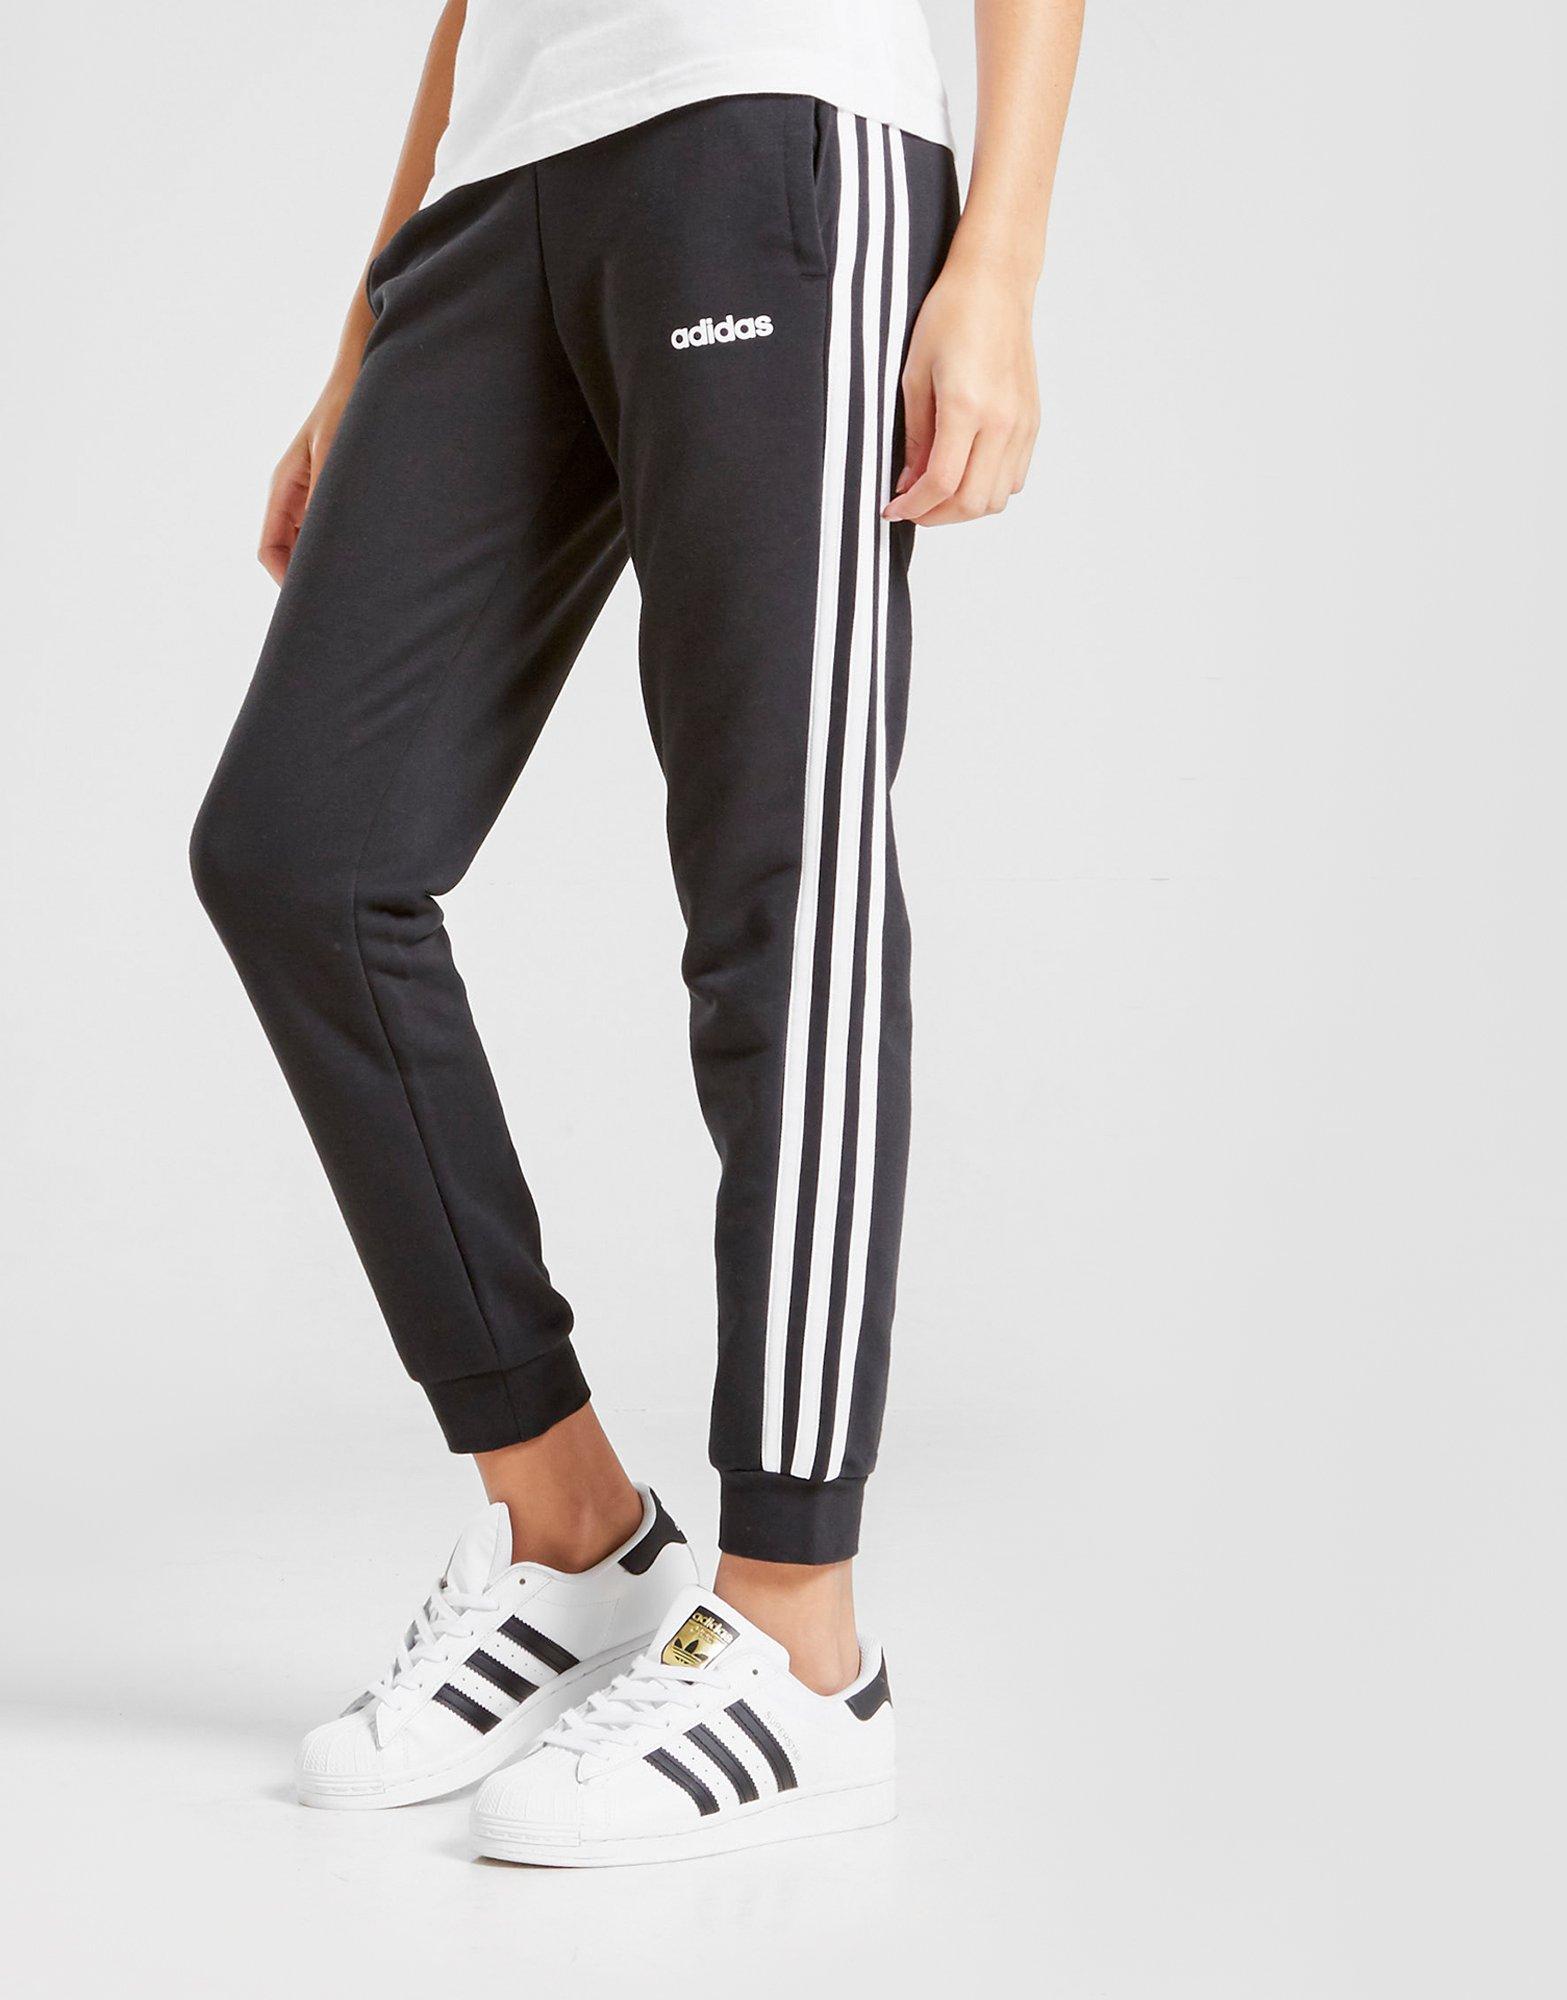 adidas two stripe pants